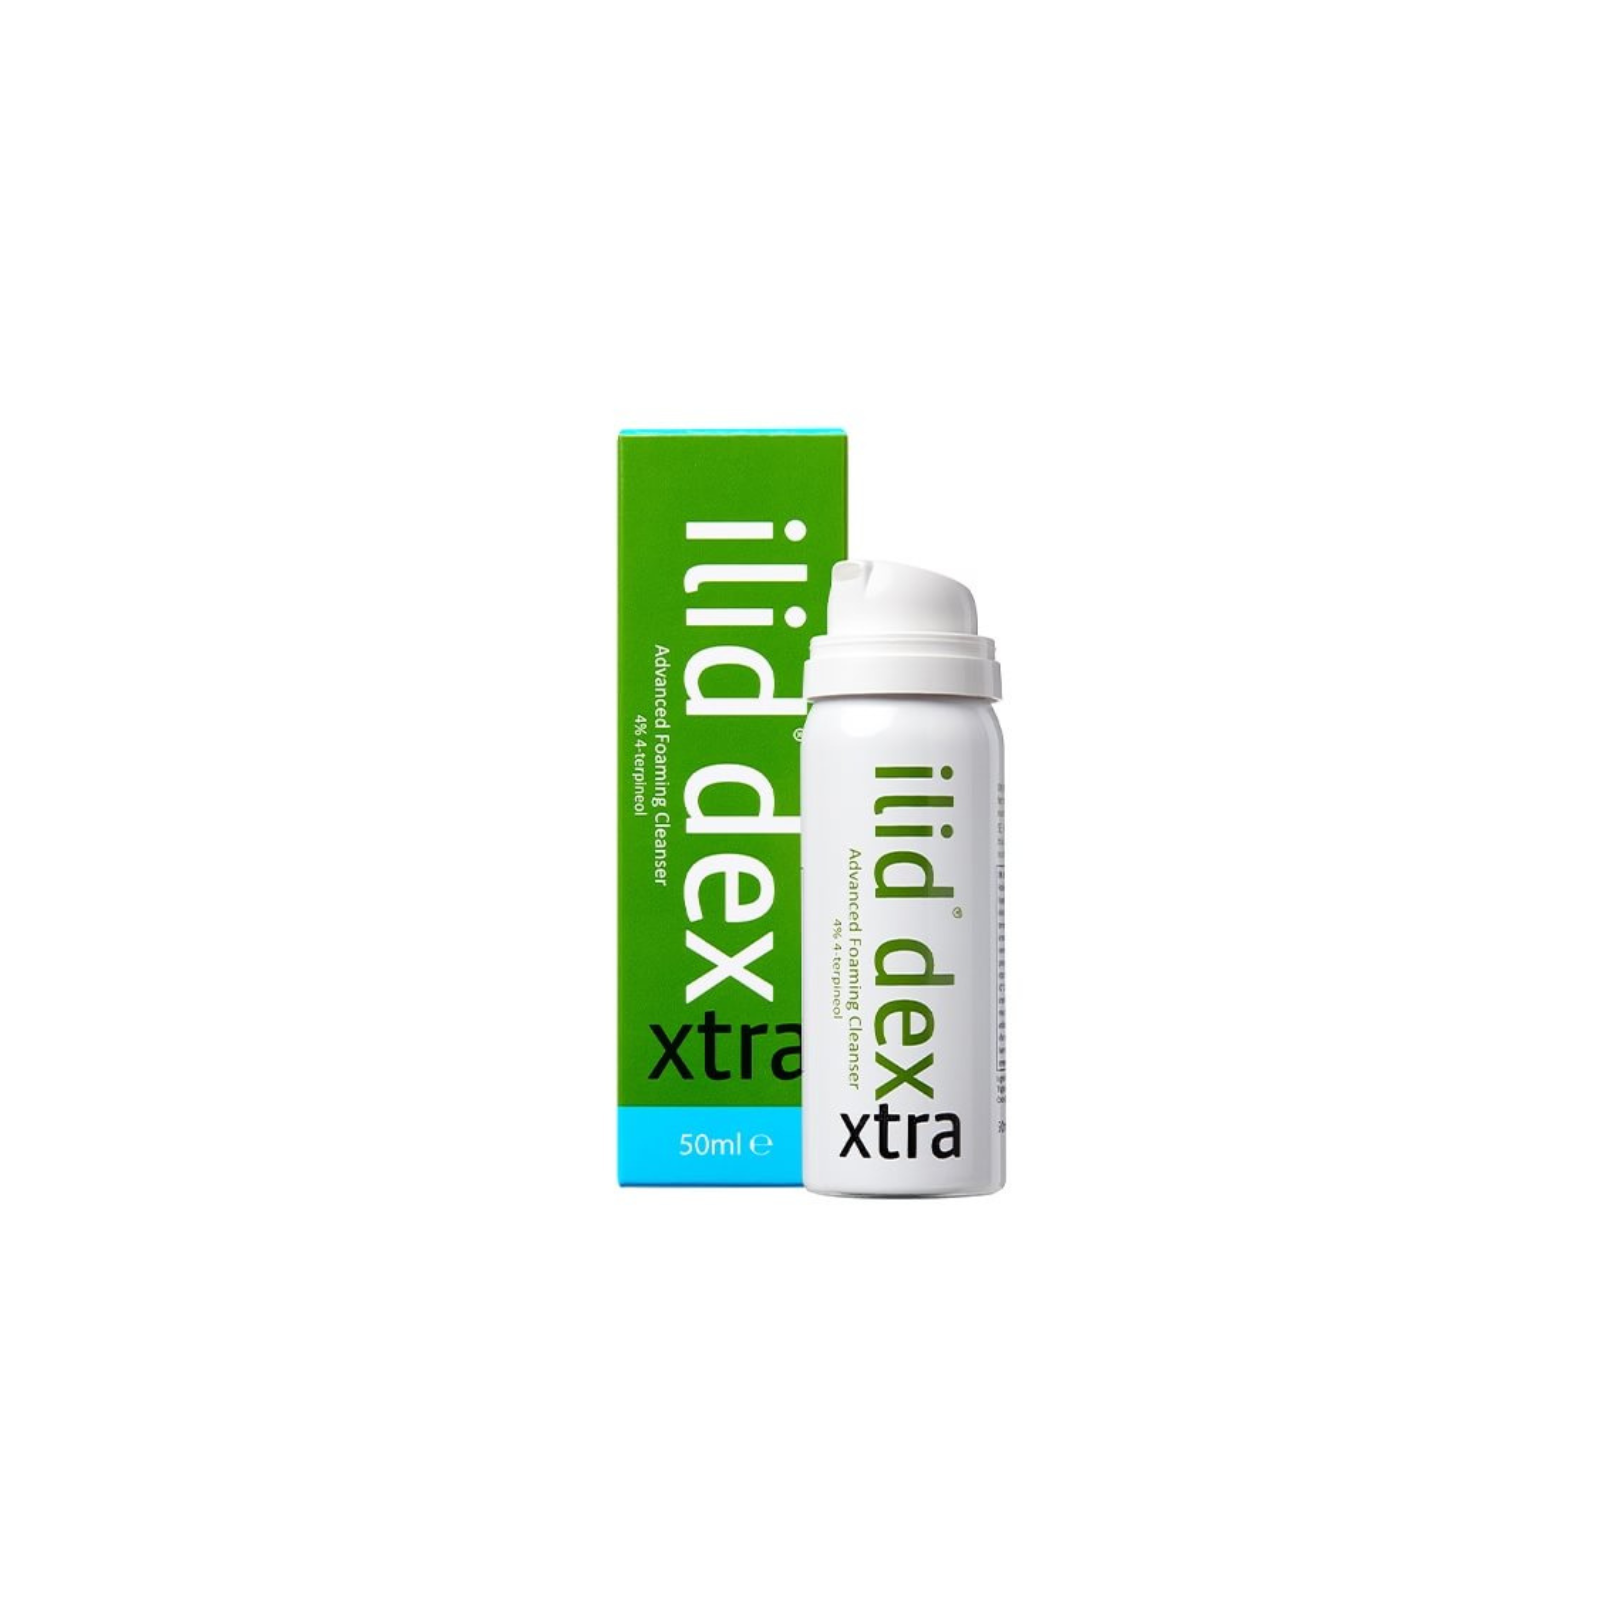 ilid dex -4% - Cleaning foam